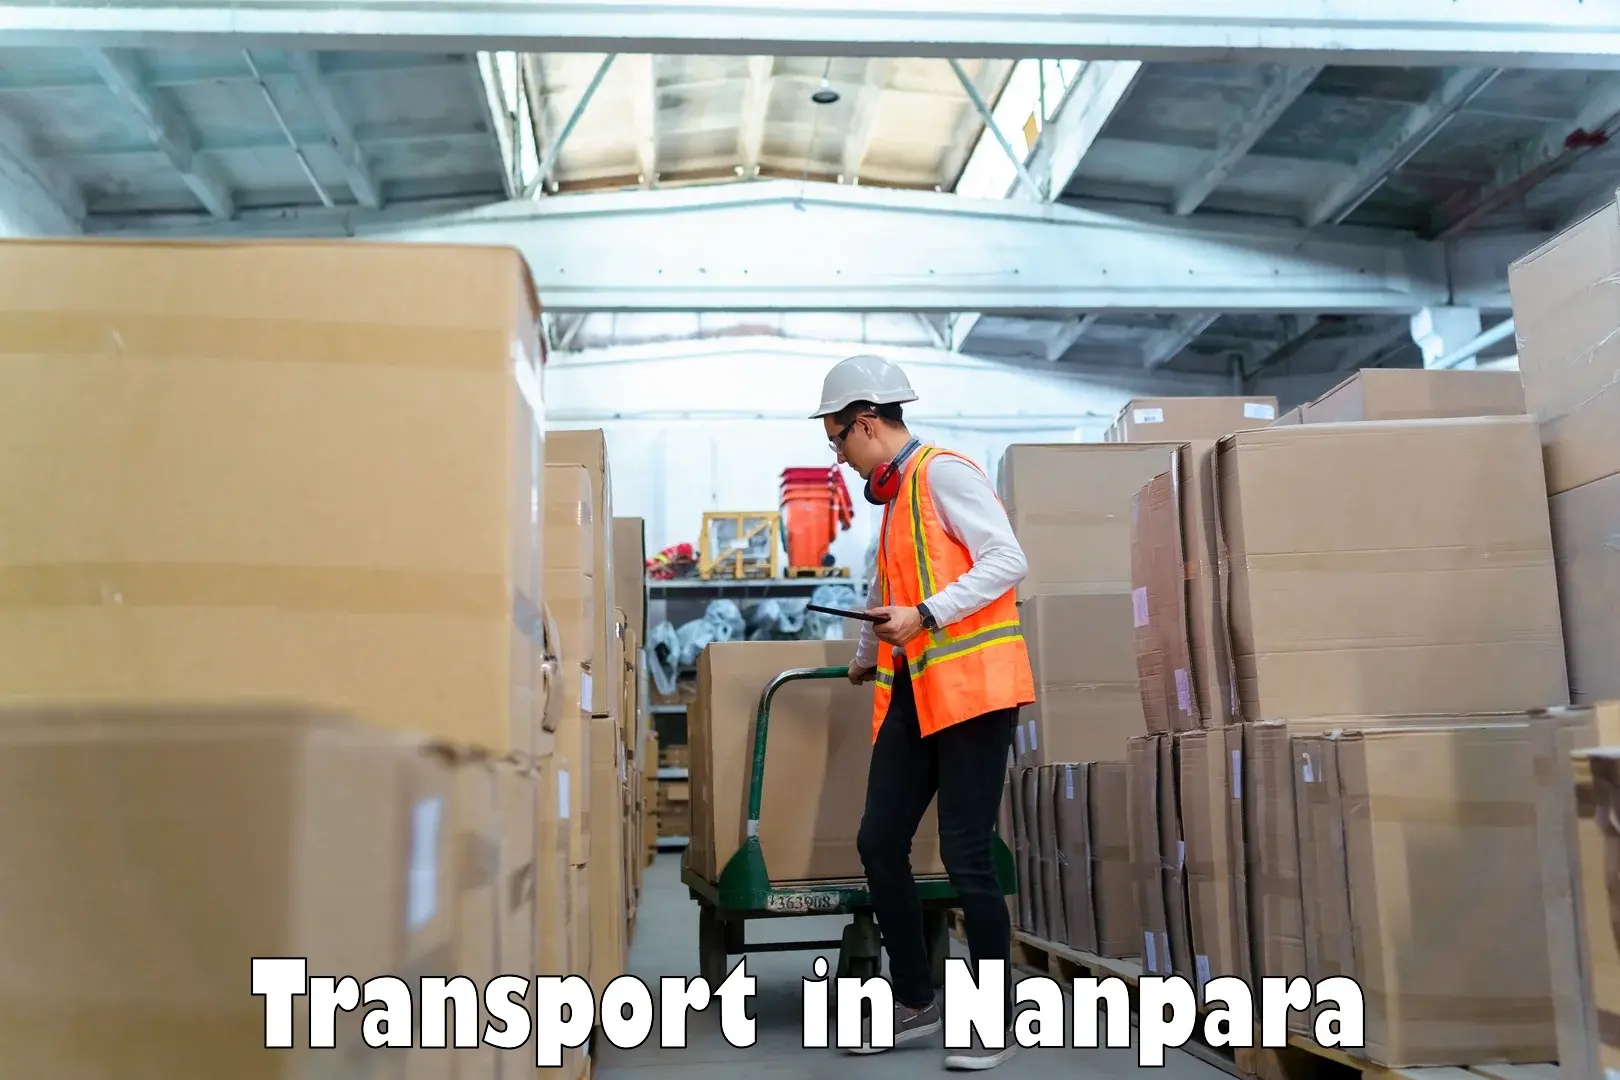 Furniture transport service in Nanpara